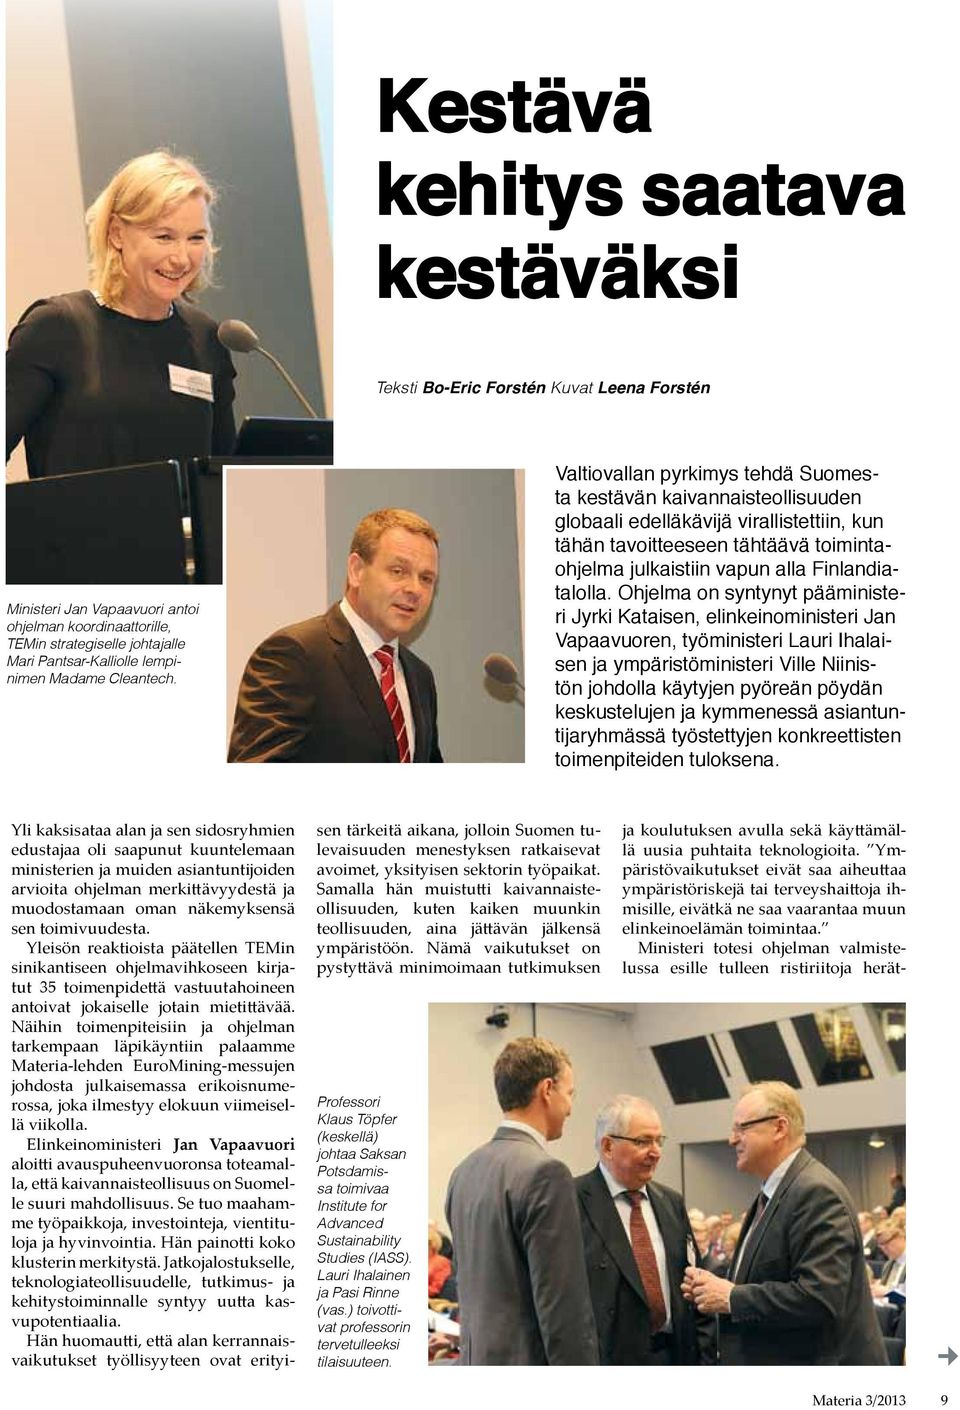 Valtiovallan pyrkimys tehdä Suomesta kestävän kaivannaisteollisuuden globaali edelläkävijä virallistettiin, kun tähän tavoitteeseen tähtäävä toimintaohjelma julkaistiin vapun alla Finlandiatalolla.